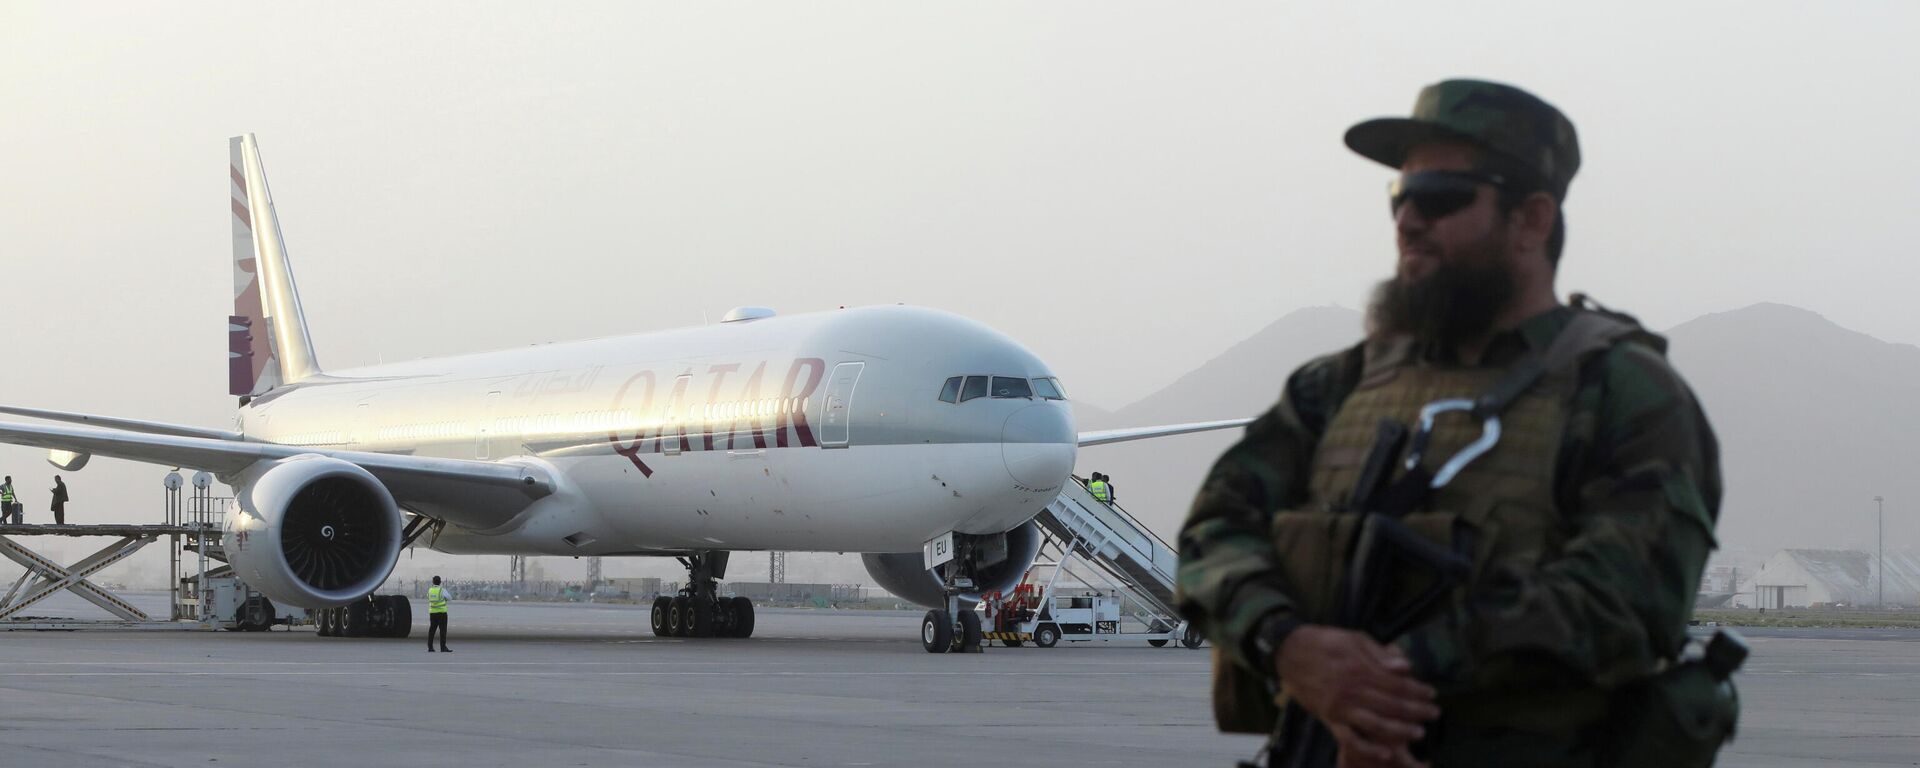 Un miembro de las fuerzas de seguridad talibanes monta guardia frente a un avión de Qatar Airways, en el Aeropuerto Internacional de Kabul, Afganistán, el 10 de septiembre de 2021 - Sputnik Mundo, 1920, 17.12.2021